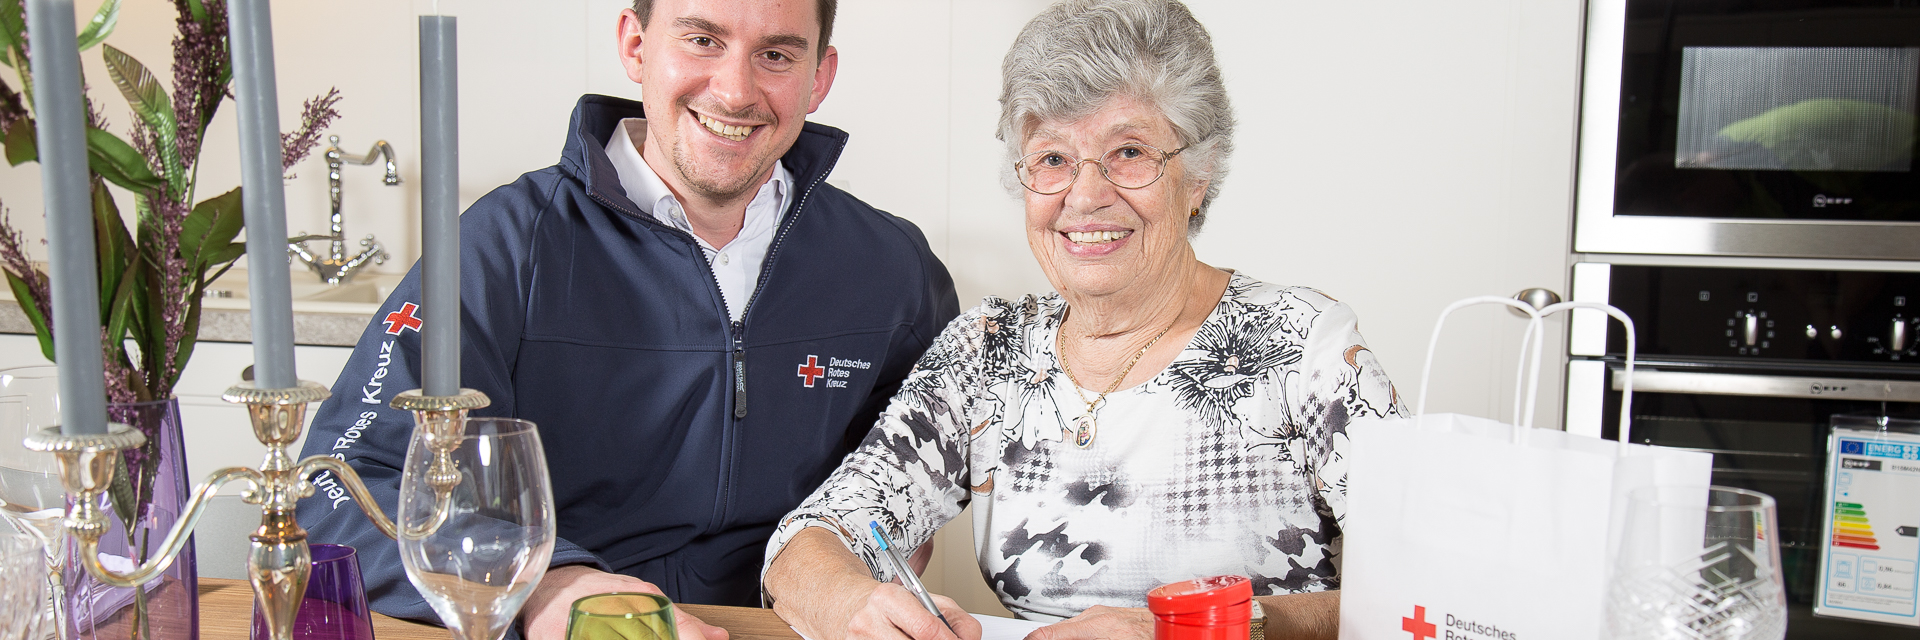 Das Foto zeigt Rotkreuzmitarbeiter mit älteren Dame in deren häuslicher Umgebung mit Rotkreuzdose